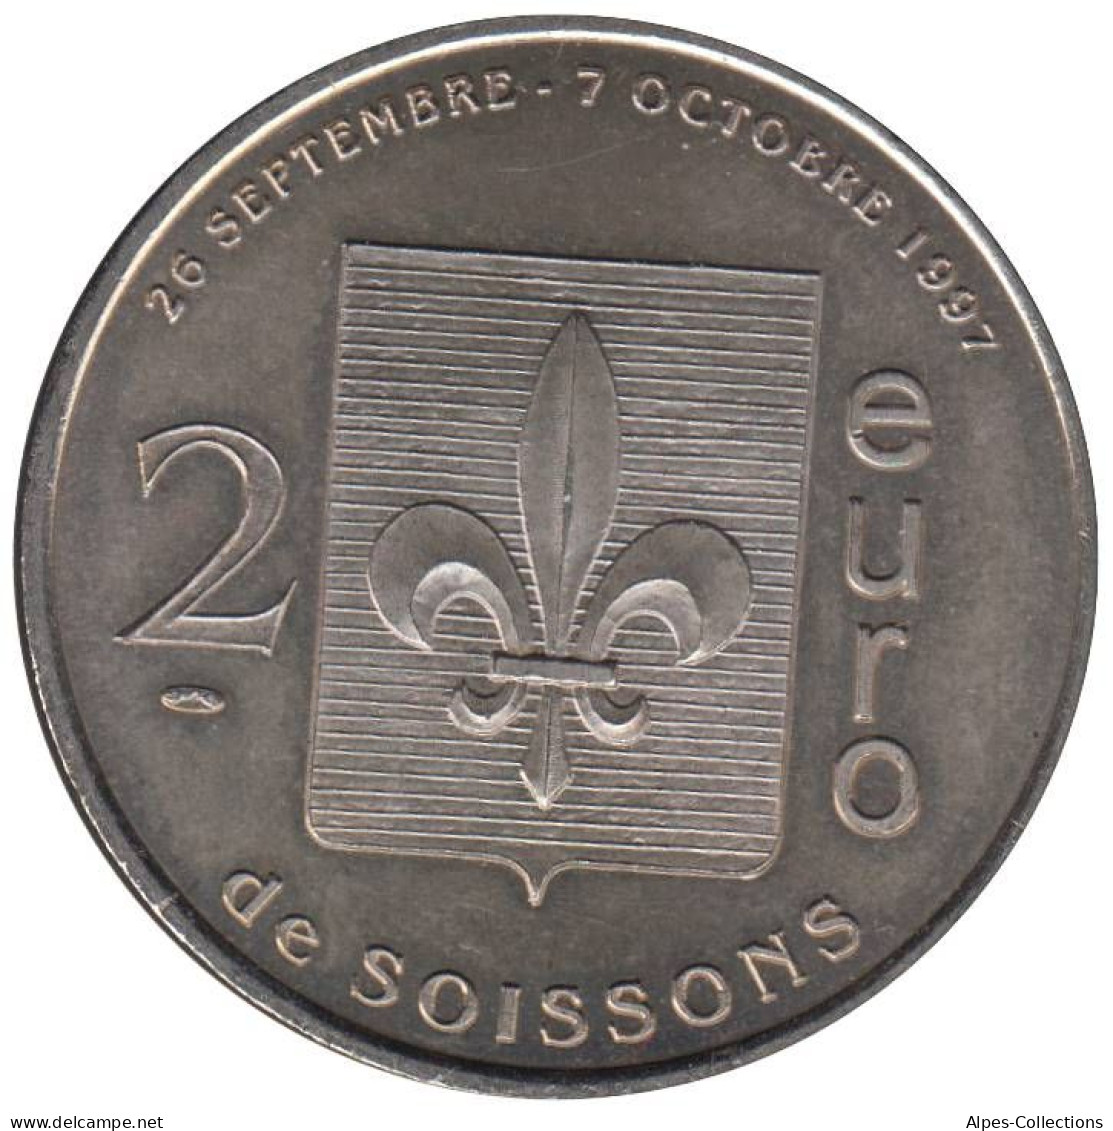 SOISSONS - EU0020.1 - 2 EURO DES VILLES - Réf: T392 - 1997 - Euro Delle Città